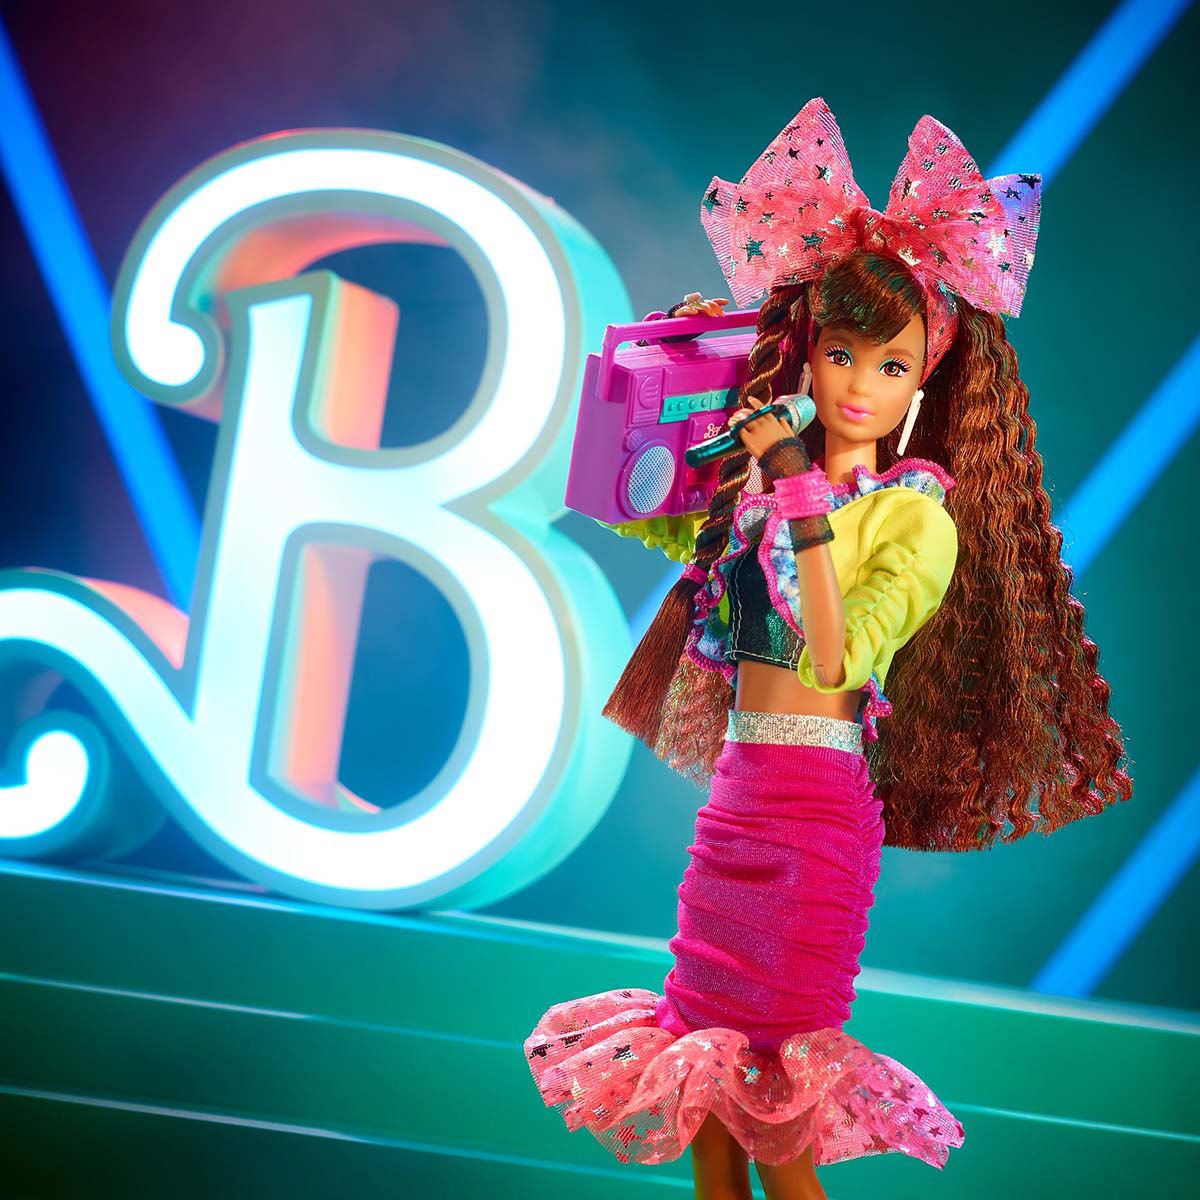 Barbie Muñeca Rewind - Noche De Fiesta